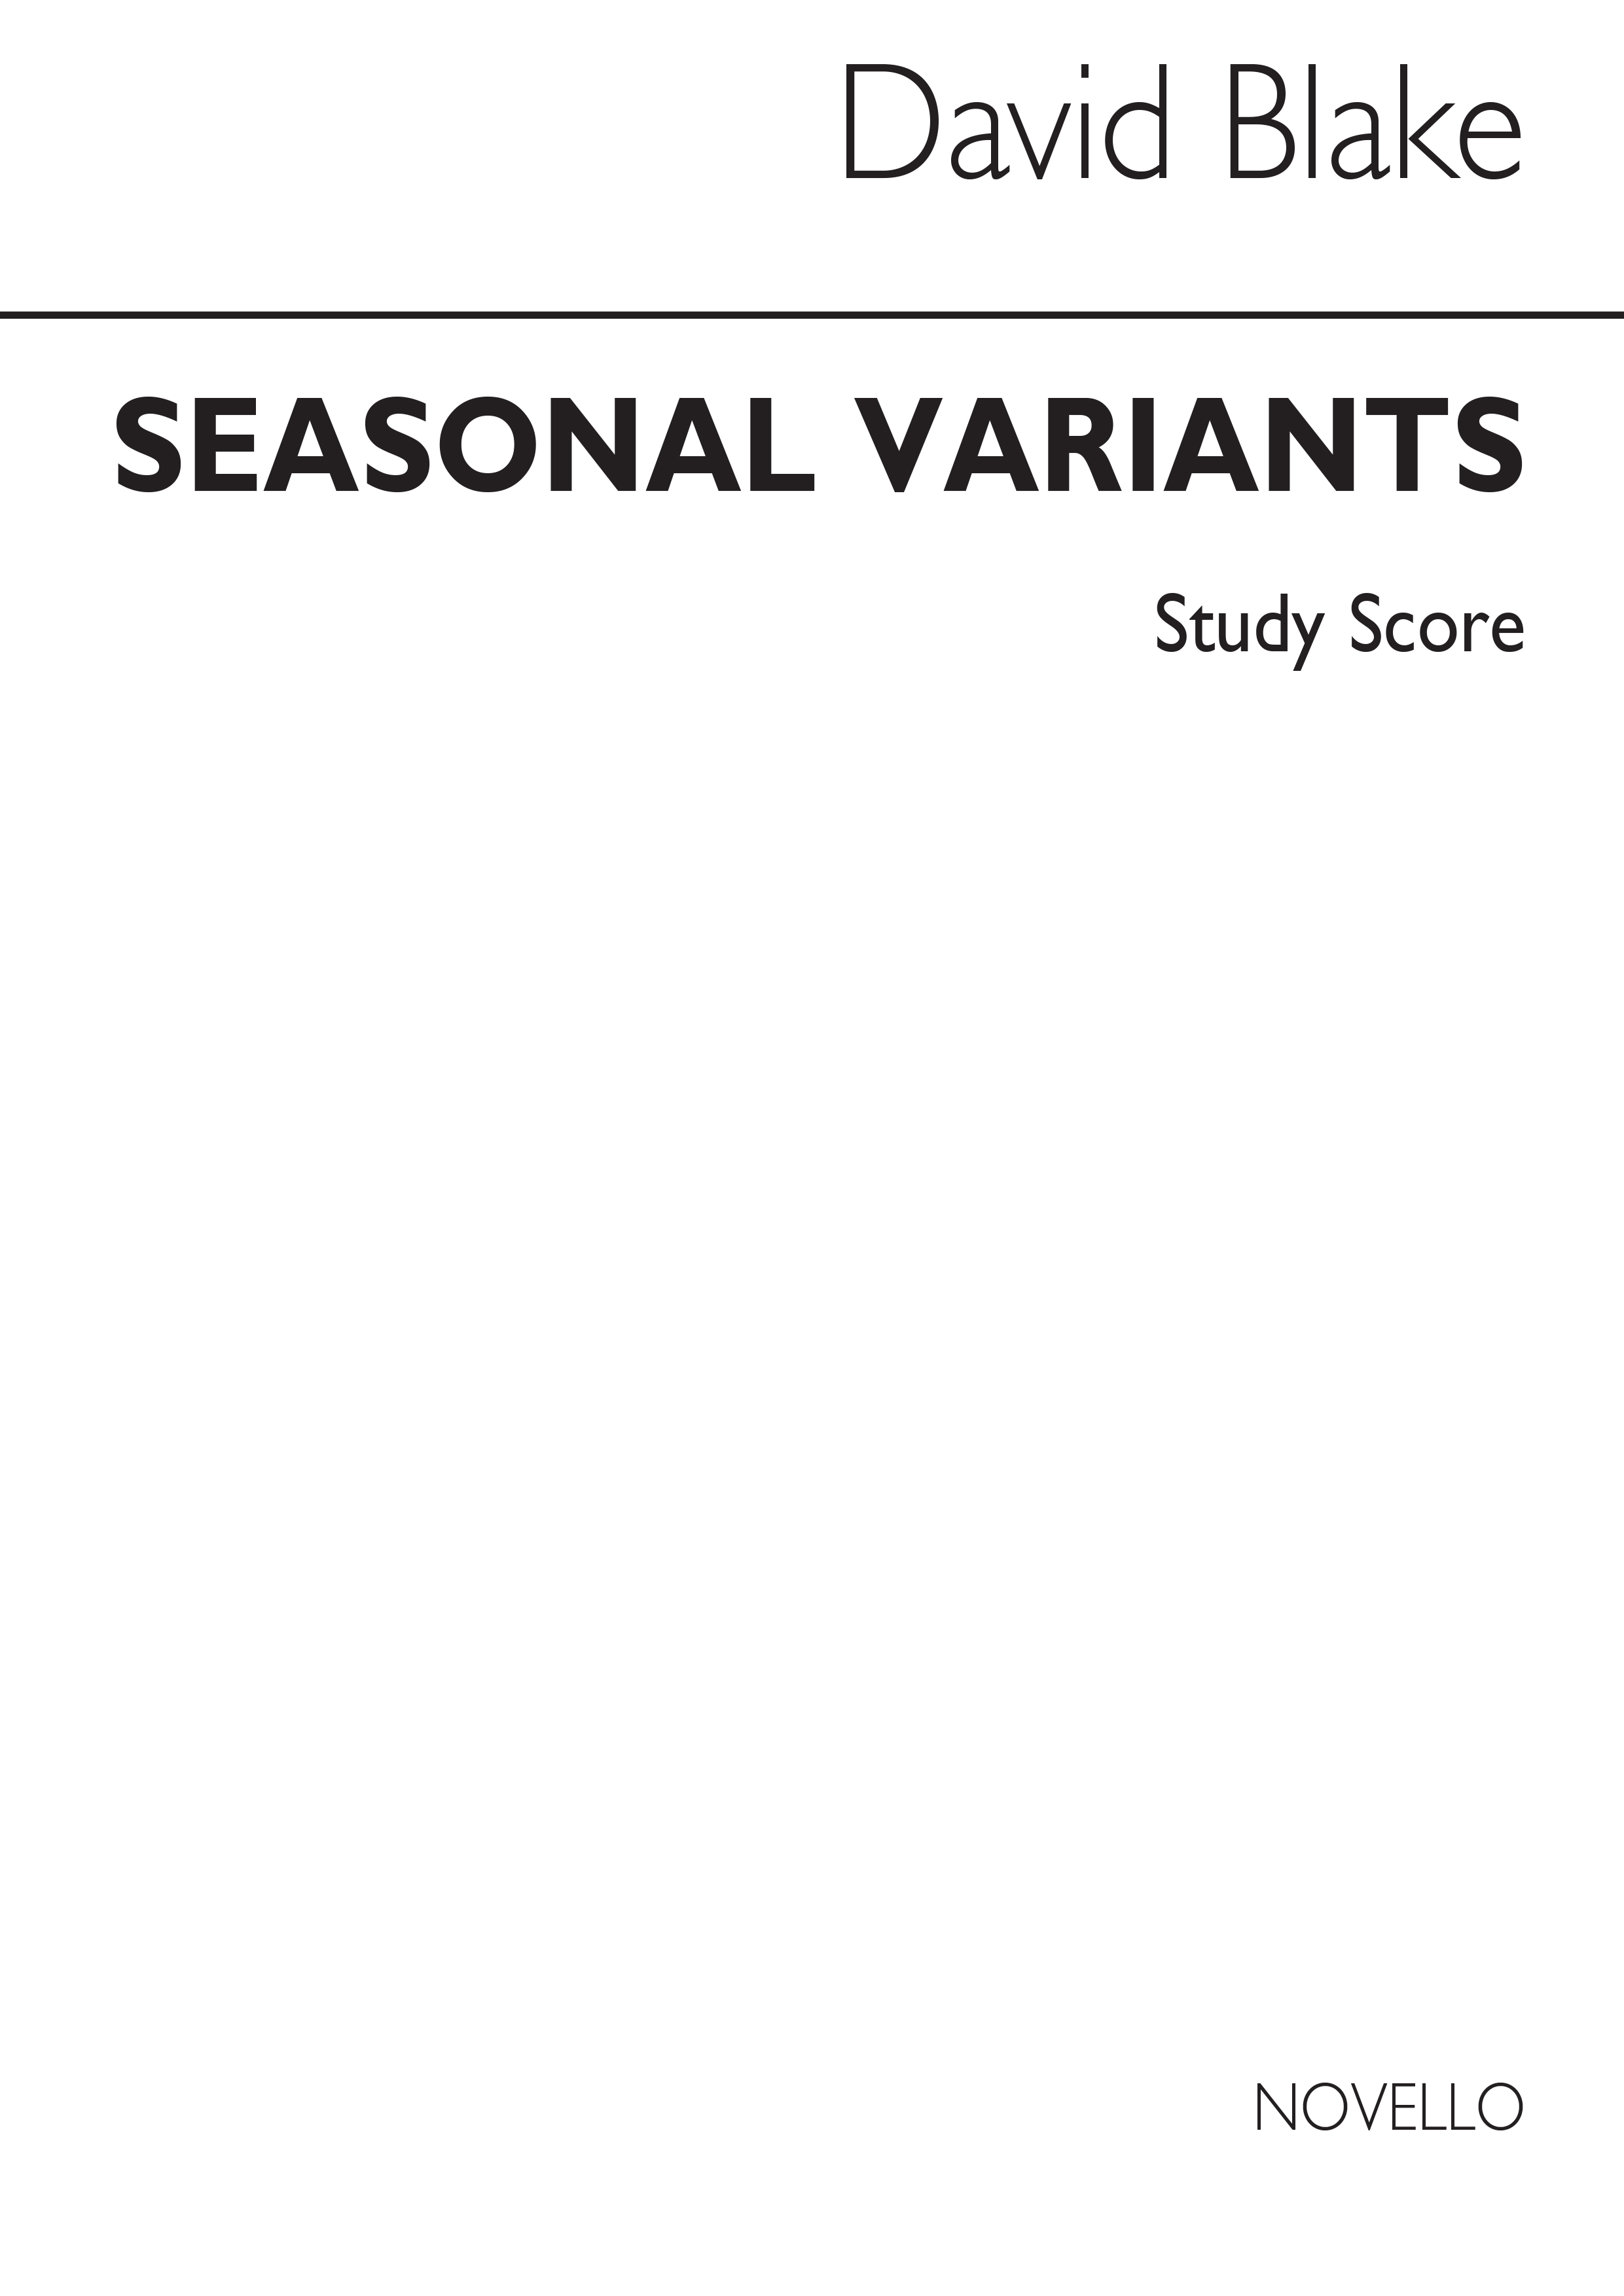 David Blake: Seasonal Variants